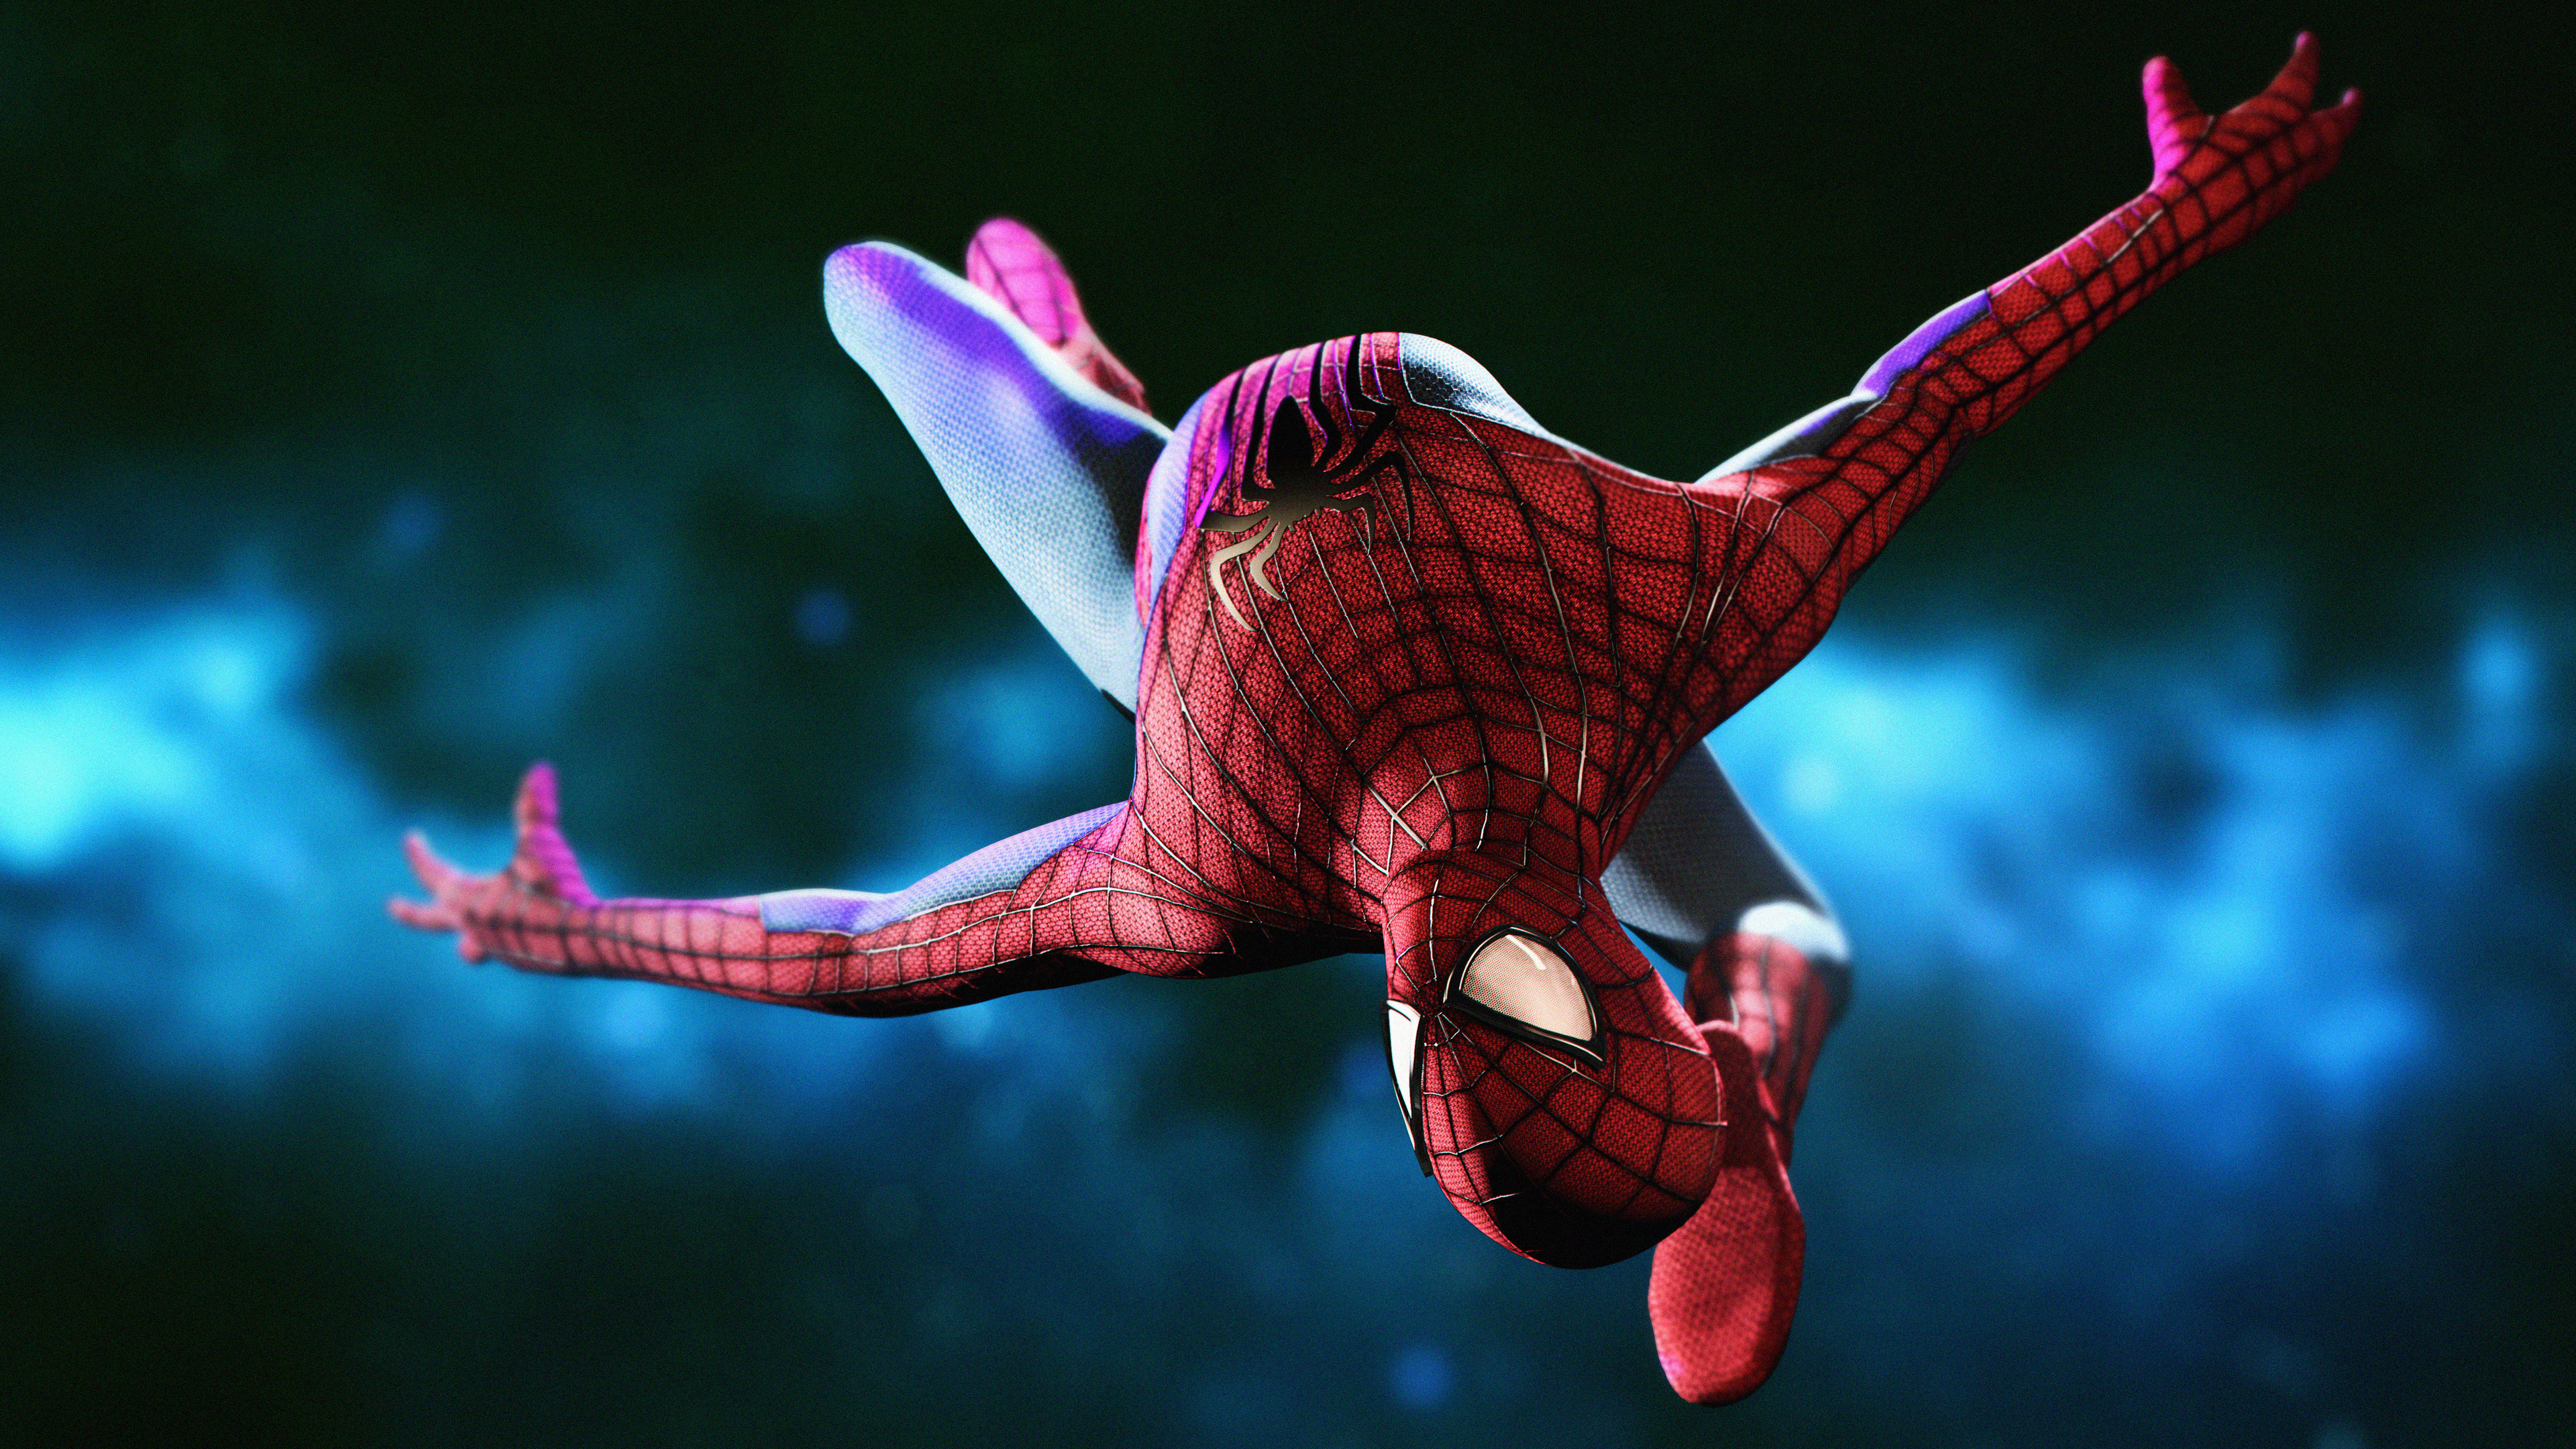 Amazing Spiderman Digital Art superheroes wallpapers ...